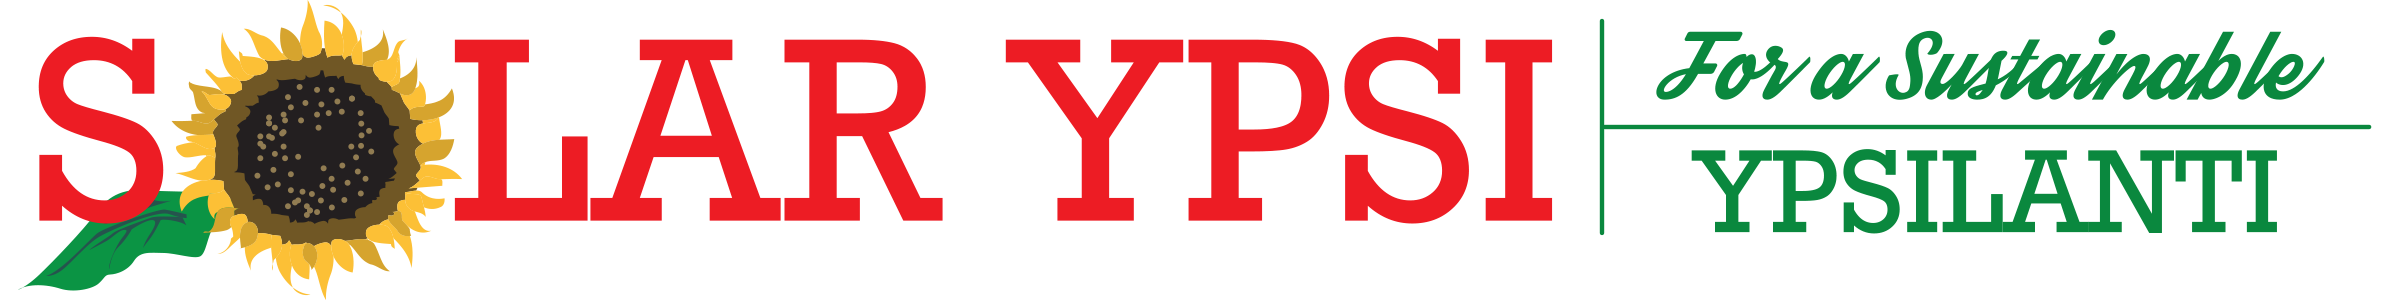 Solarypsi logo